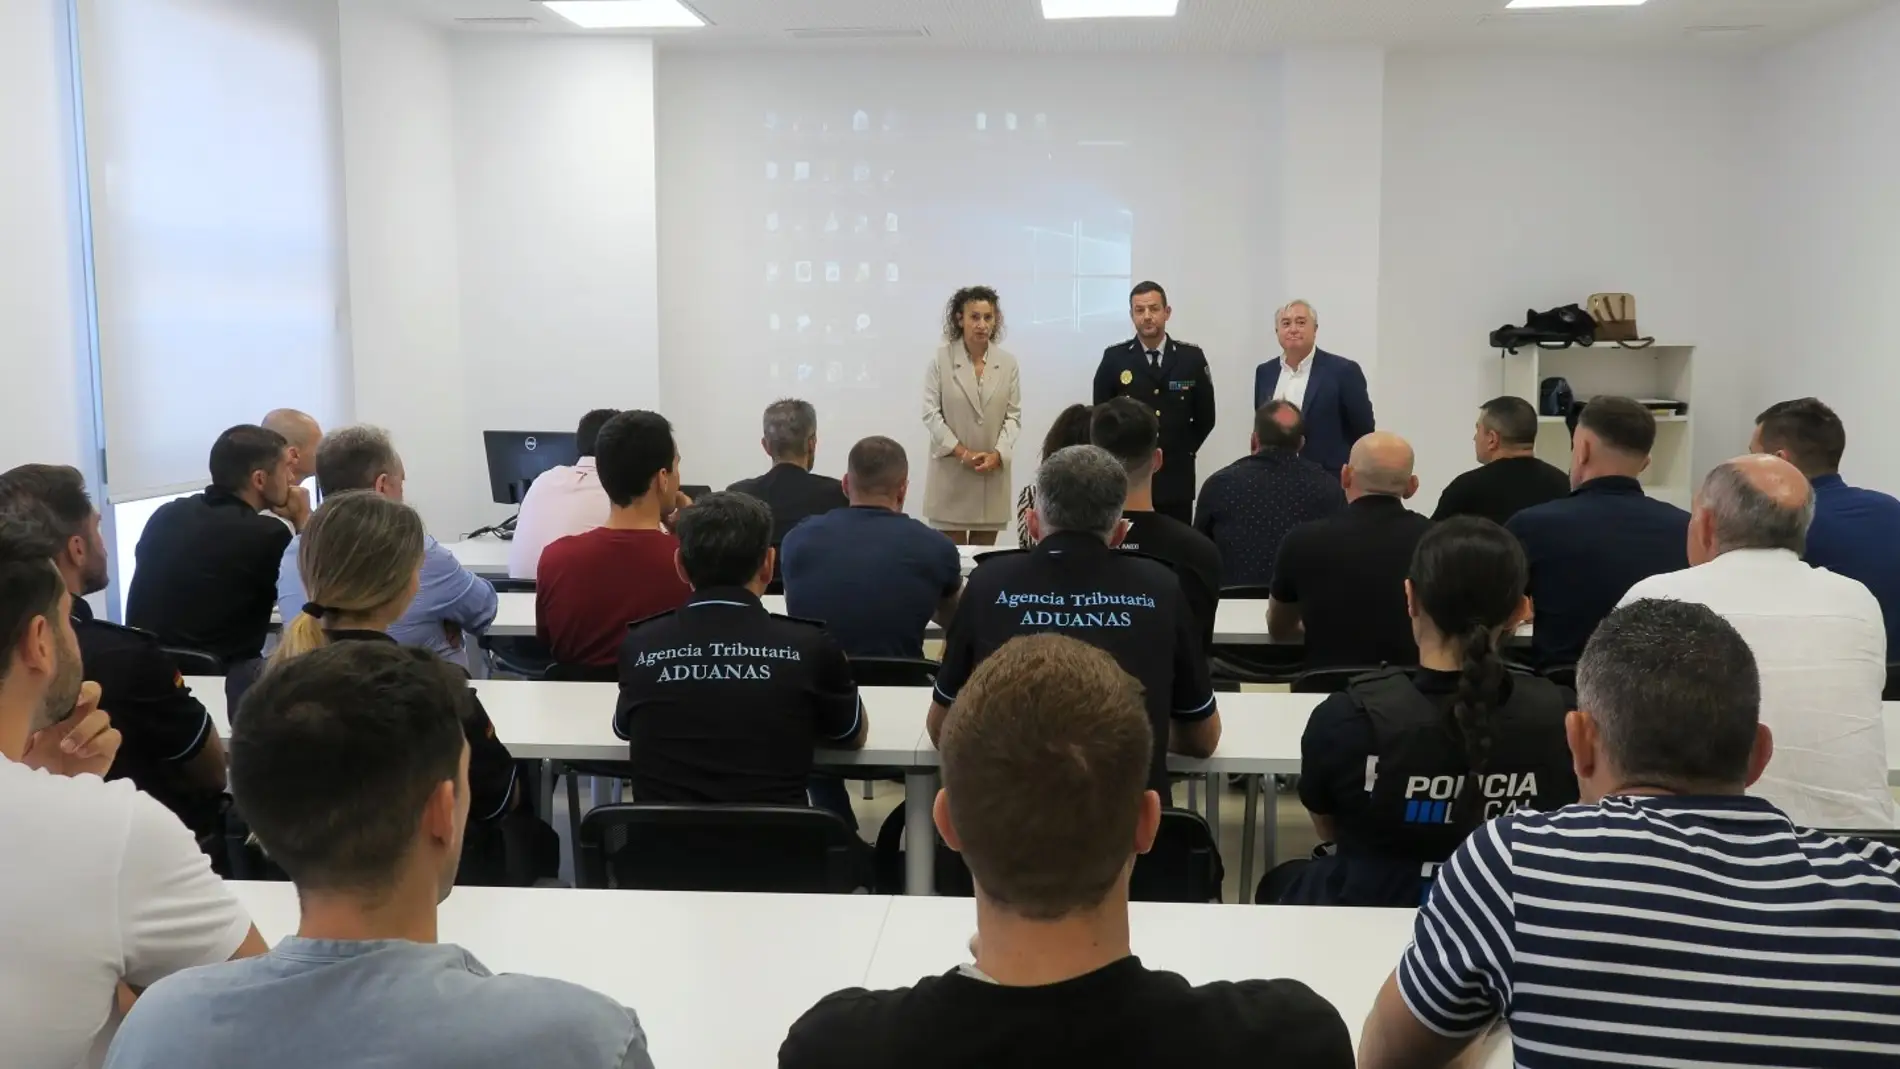 La Policía Local de Sant Antoni organiza en Ibiza una jornada junto al CNI "para mejorar la convivencia entre colectivos y religiones" 